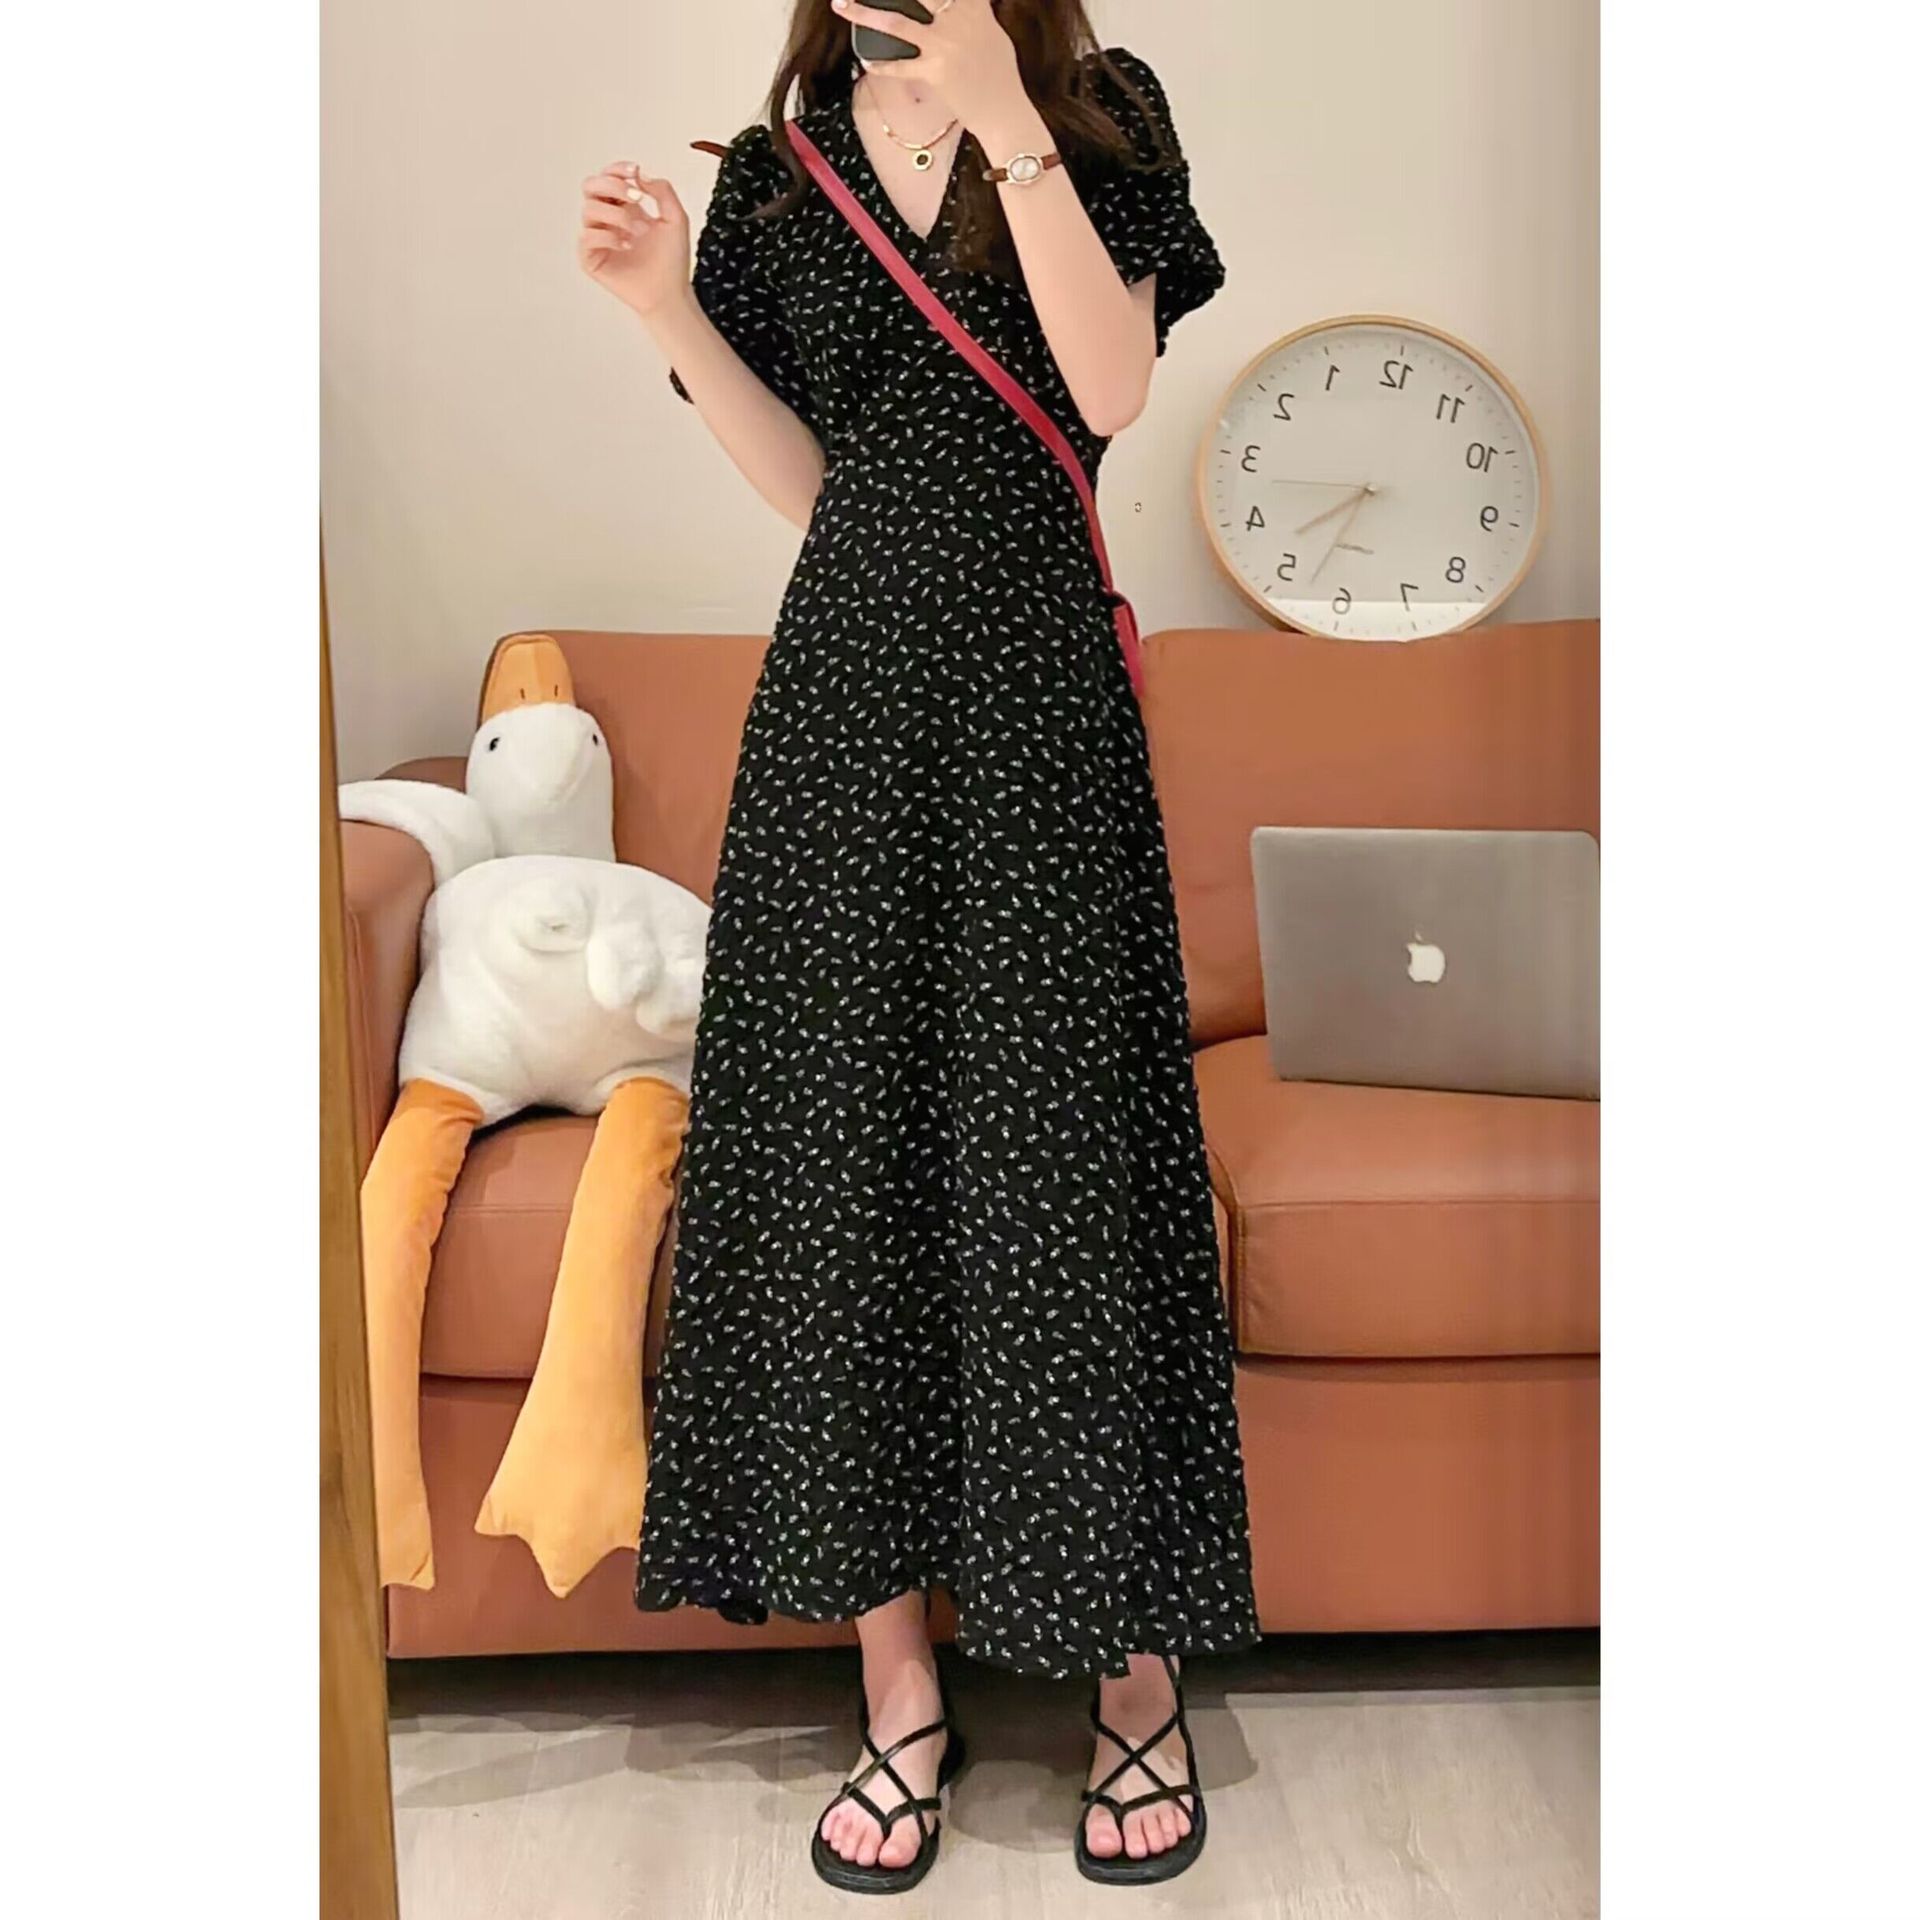 French Style Short Sleeve Overknee Dress Black Floral Women's Summer 2023 New Slimming V-Neckline Dress